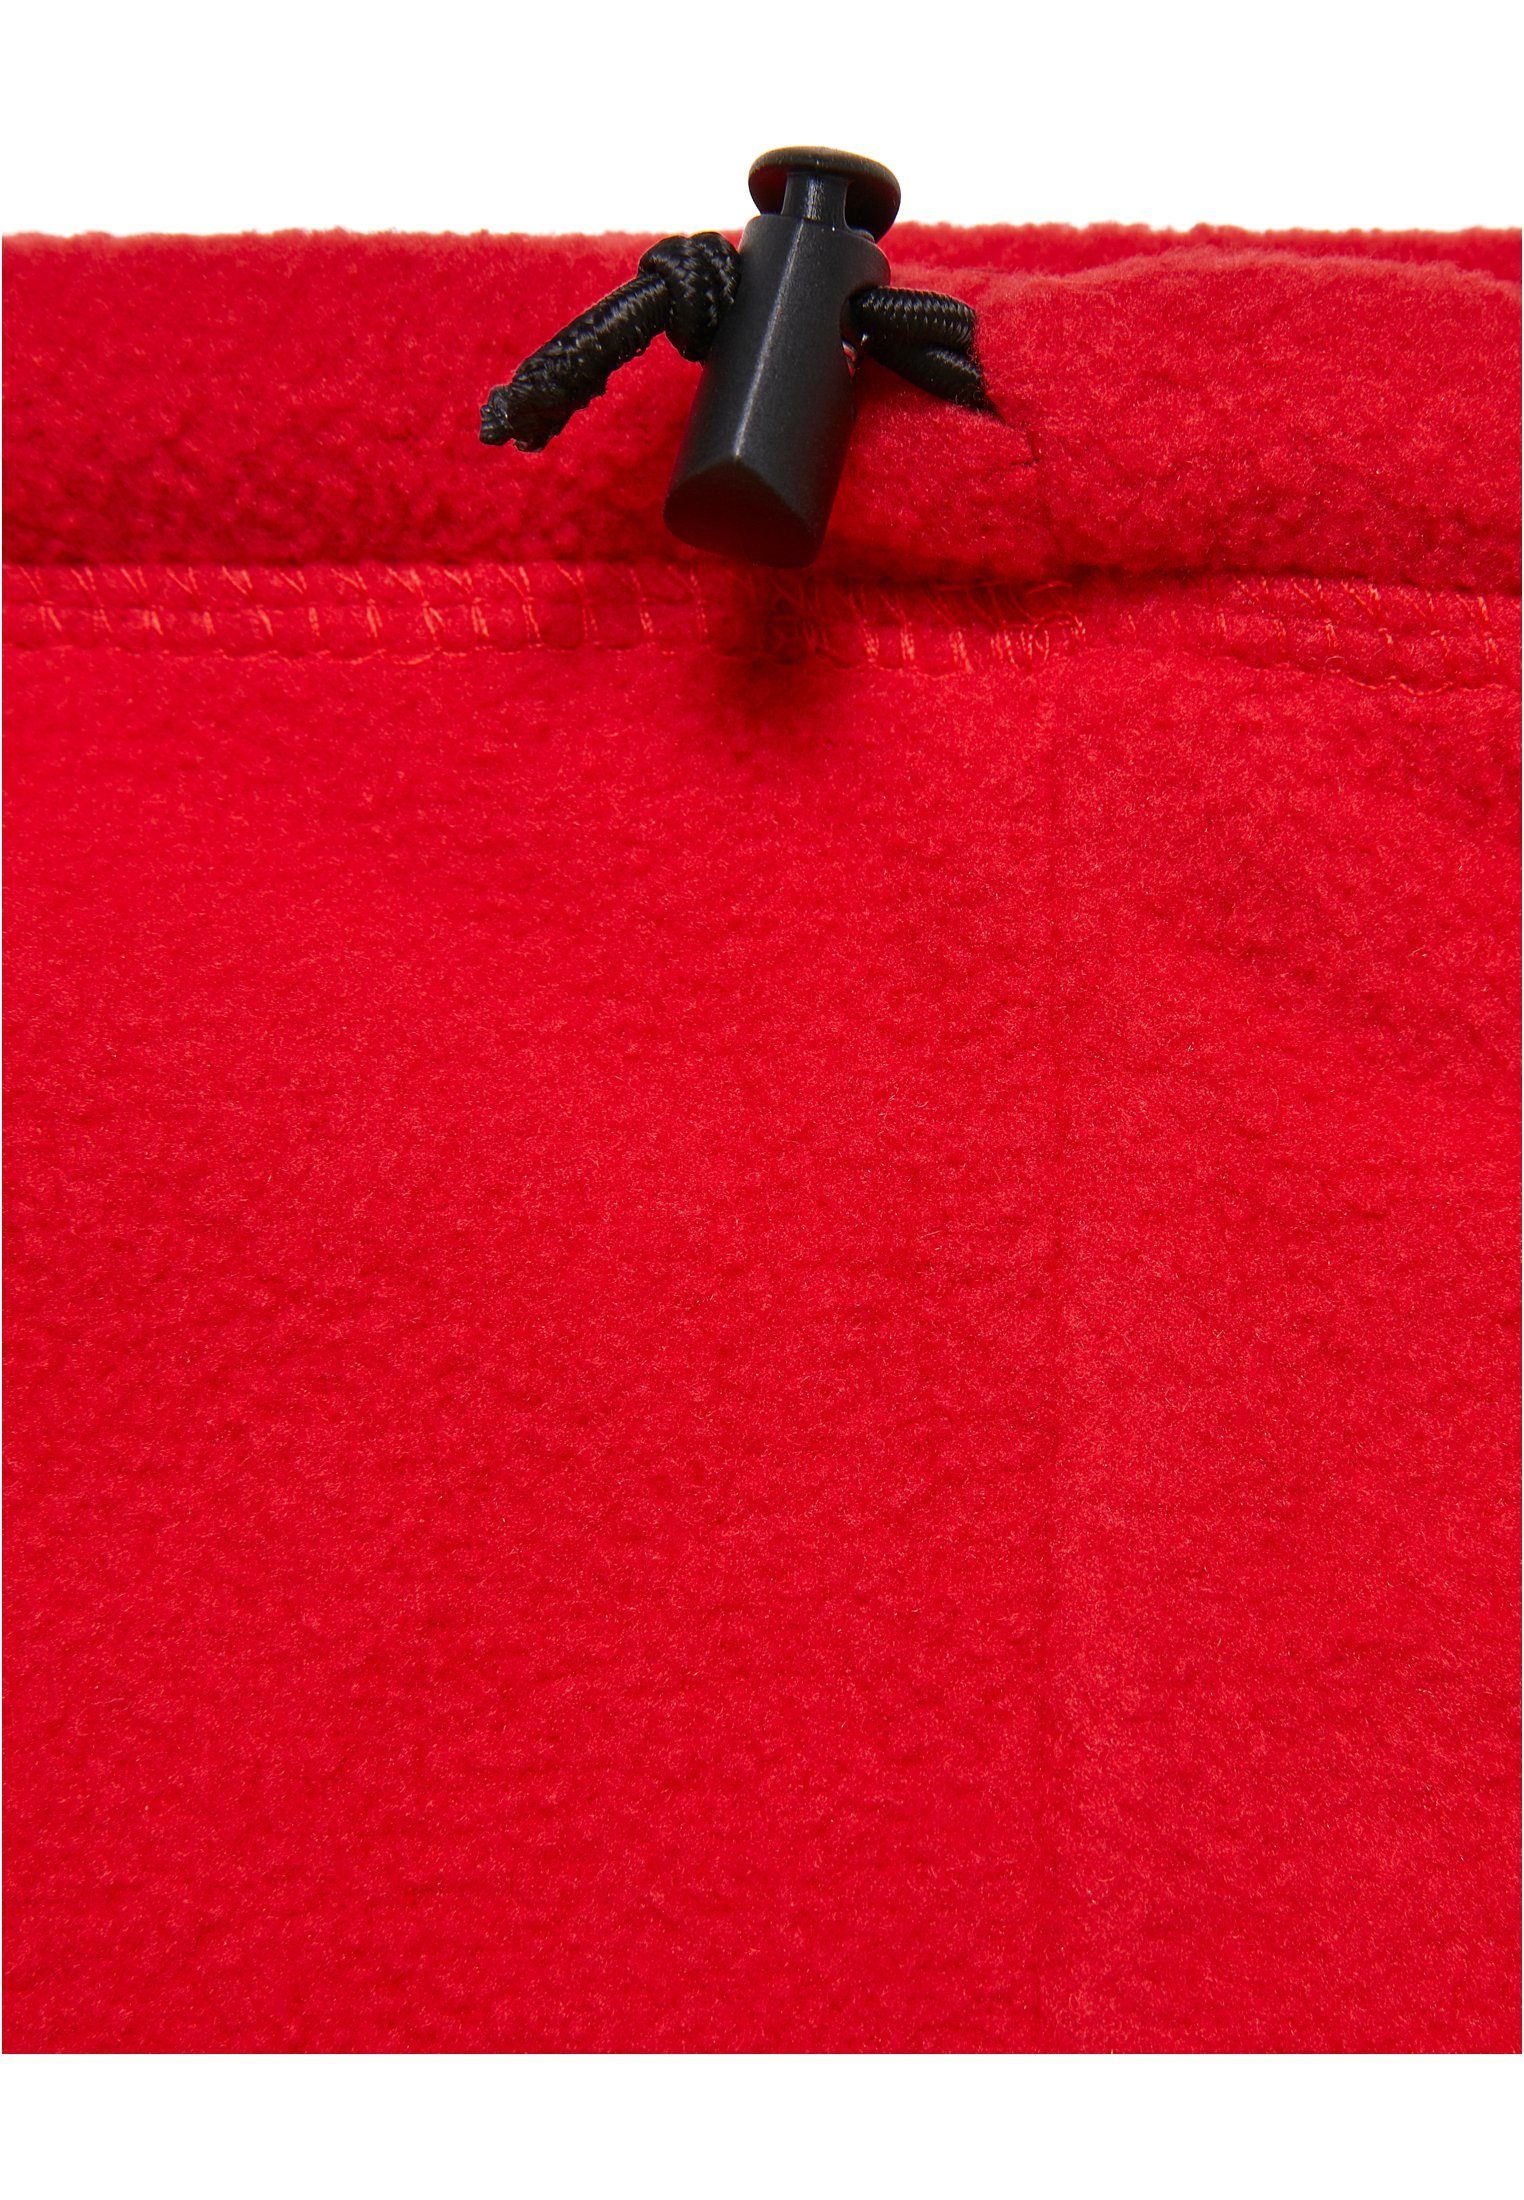 Baumwollhandschuhe NASA Set red MisterTee Fleece Accessoires